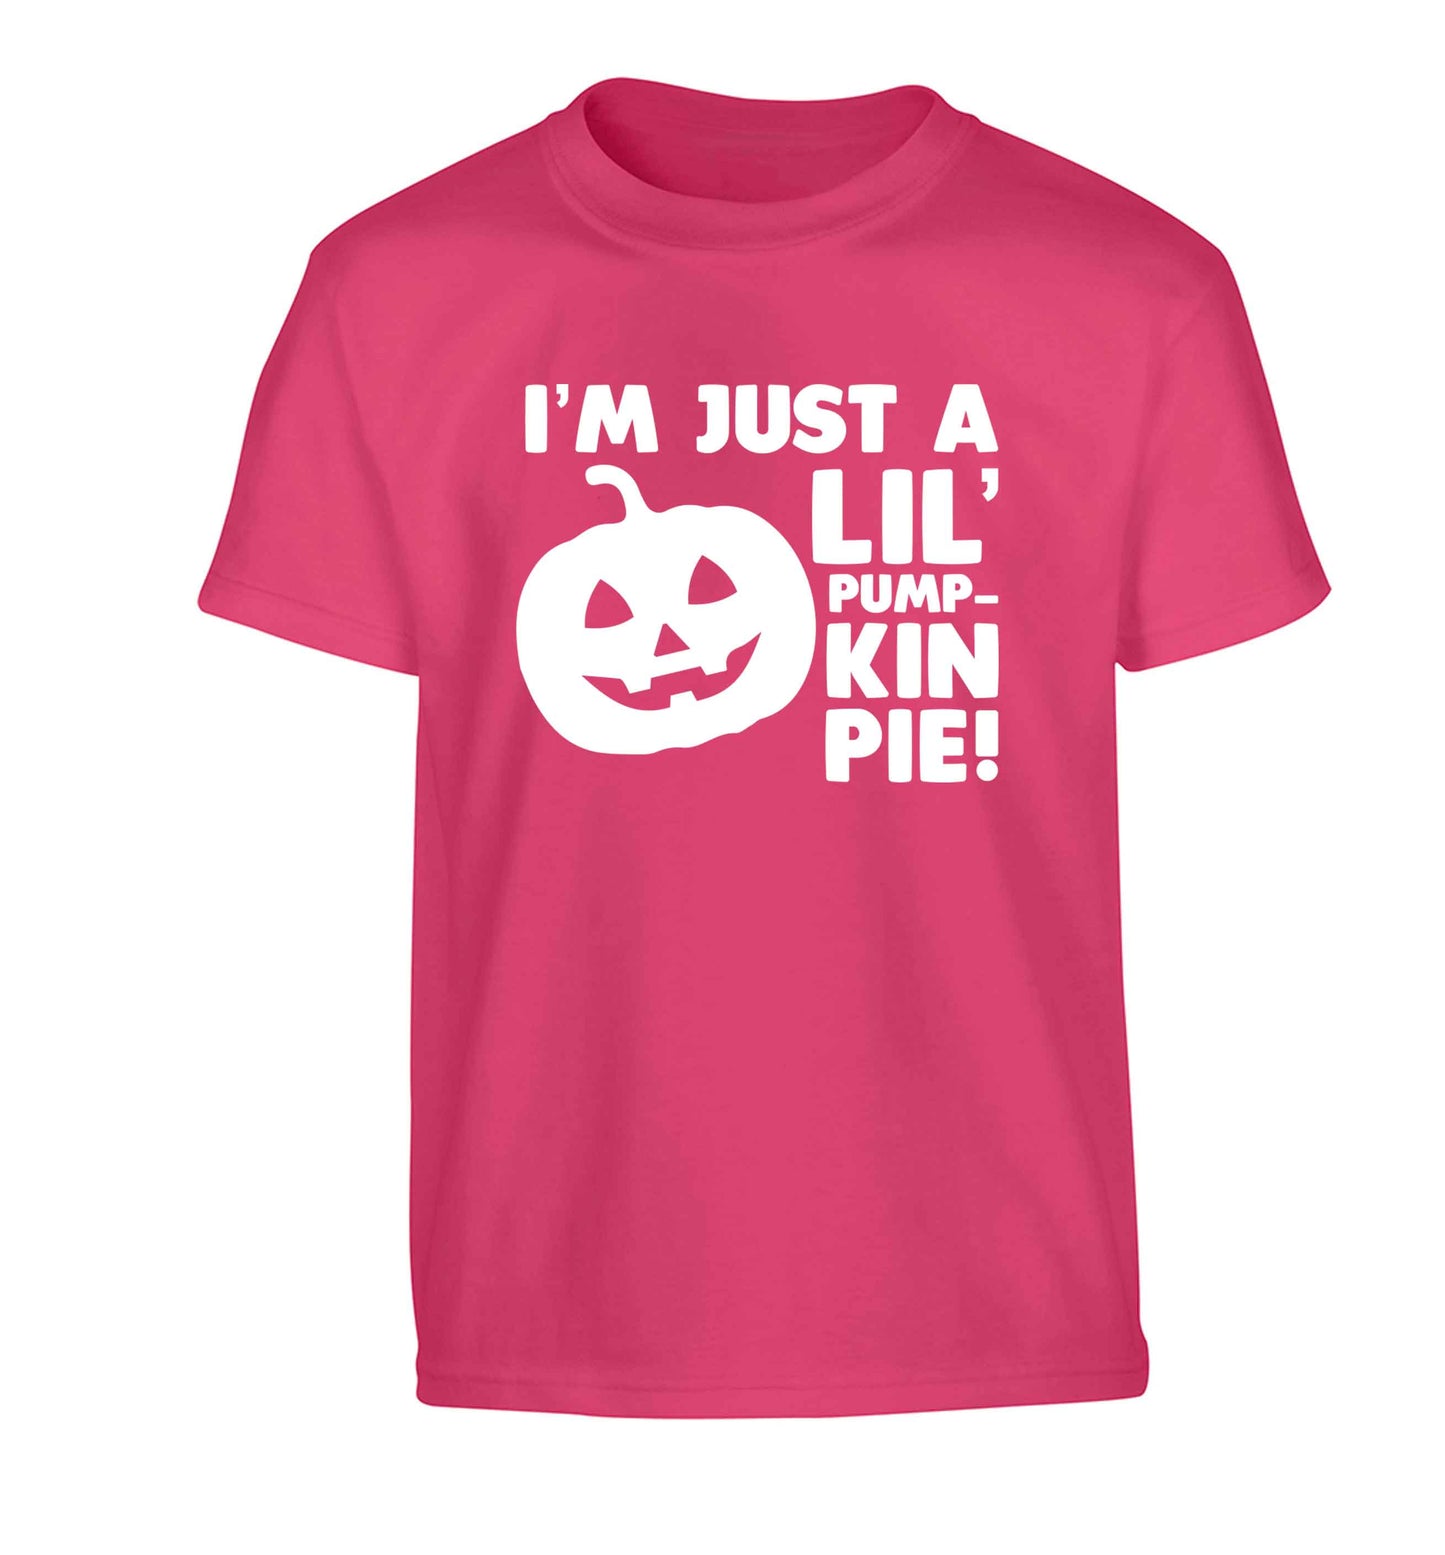 I'm just a lil' pumpkin pie Children's pink Tshirt 12-13 Years